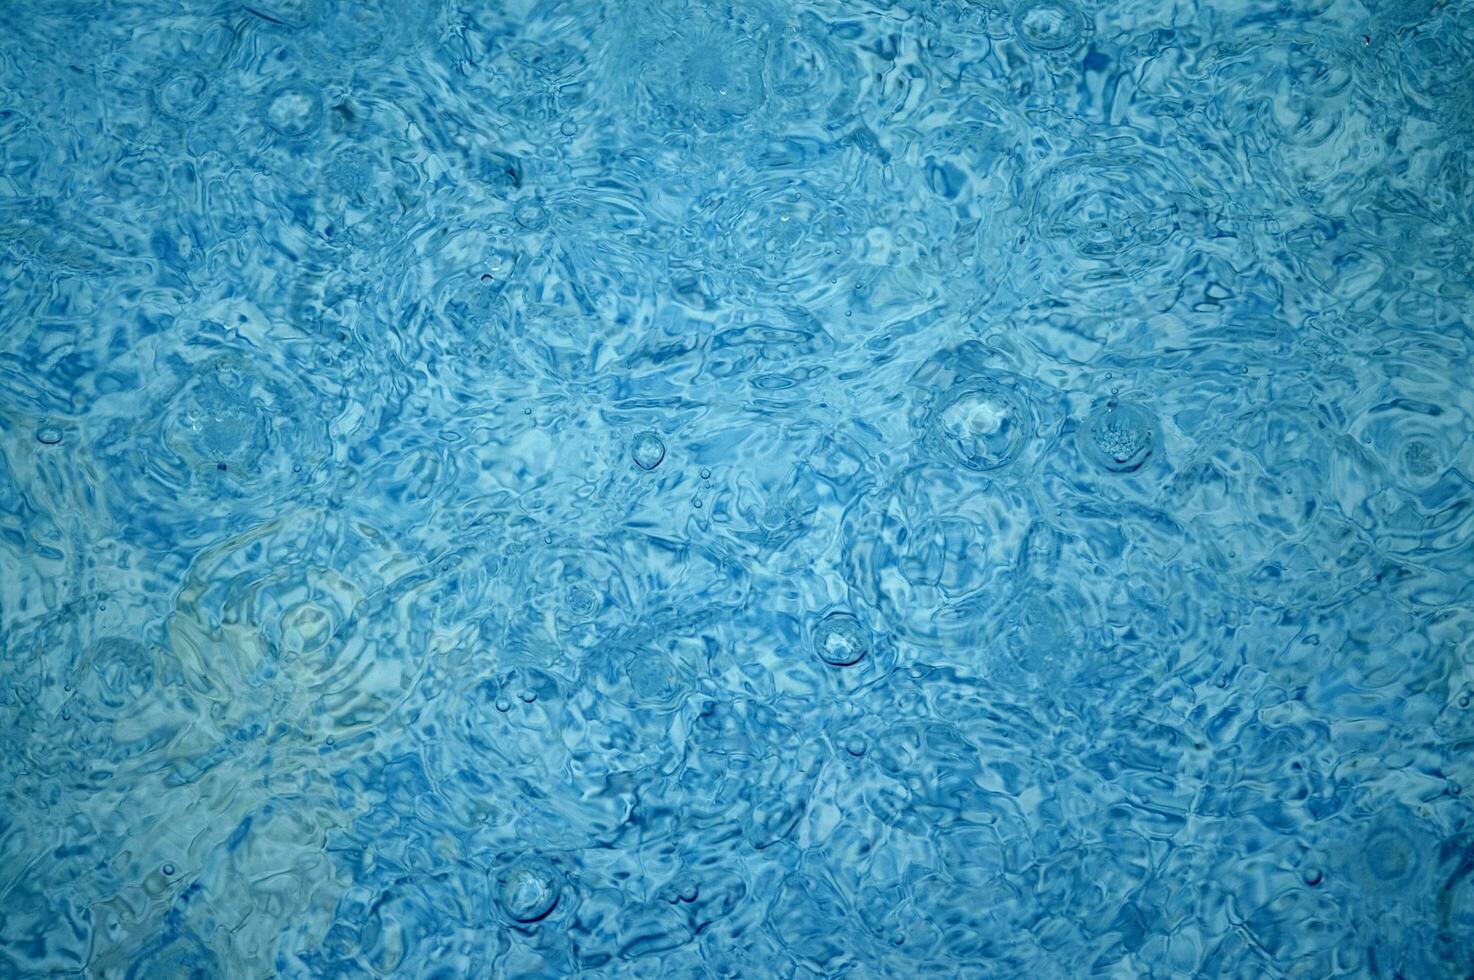 blu astratto sfondo con acqua goccioline foto